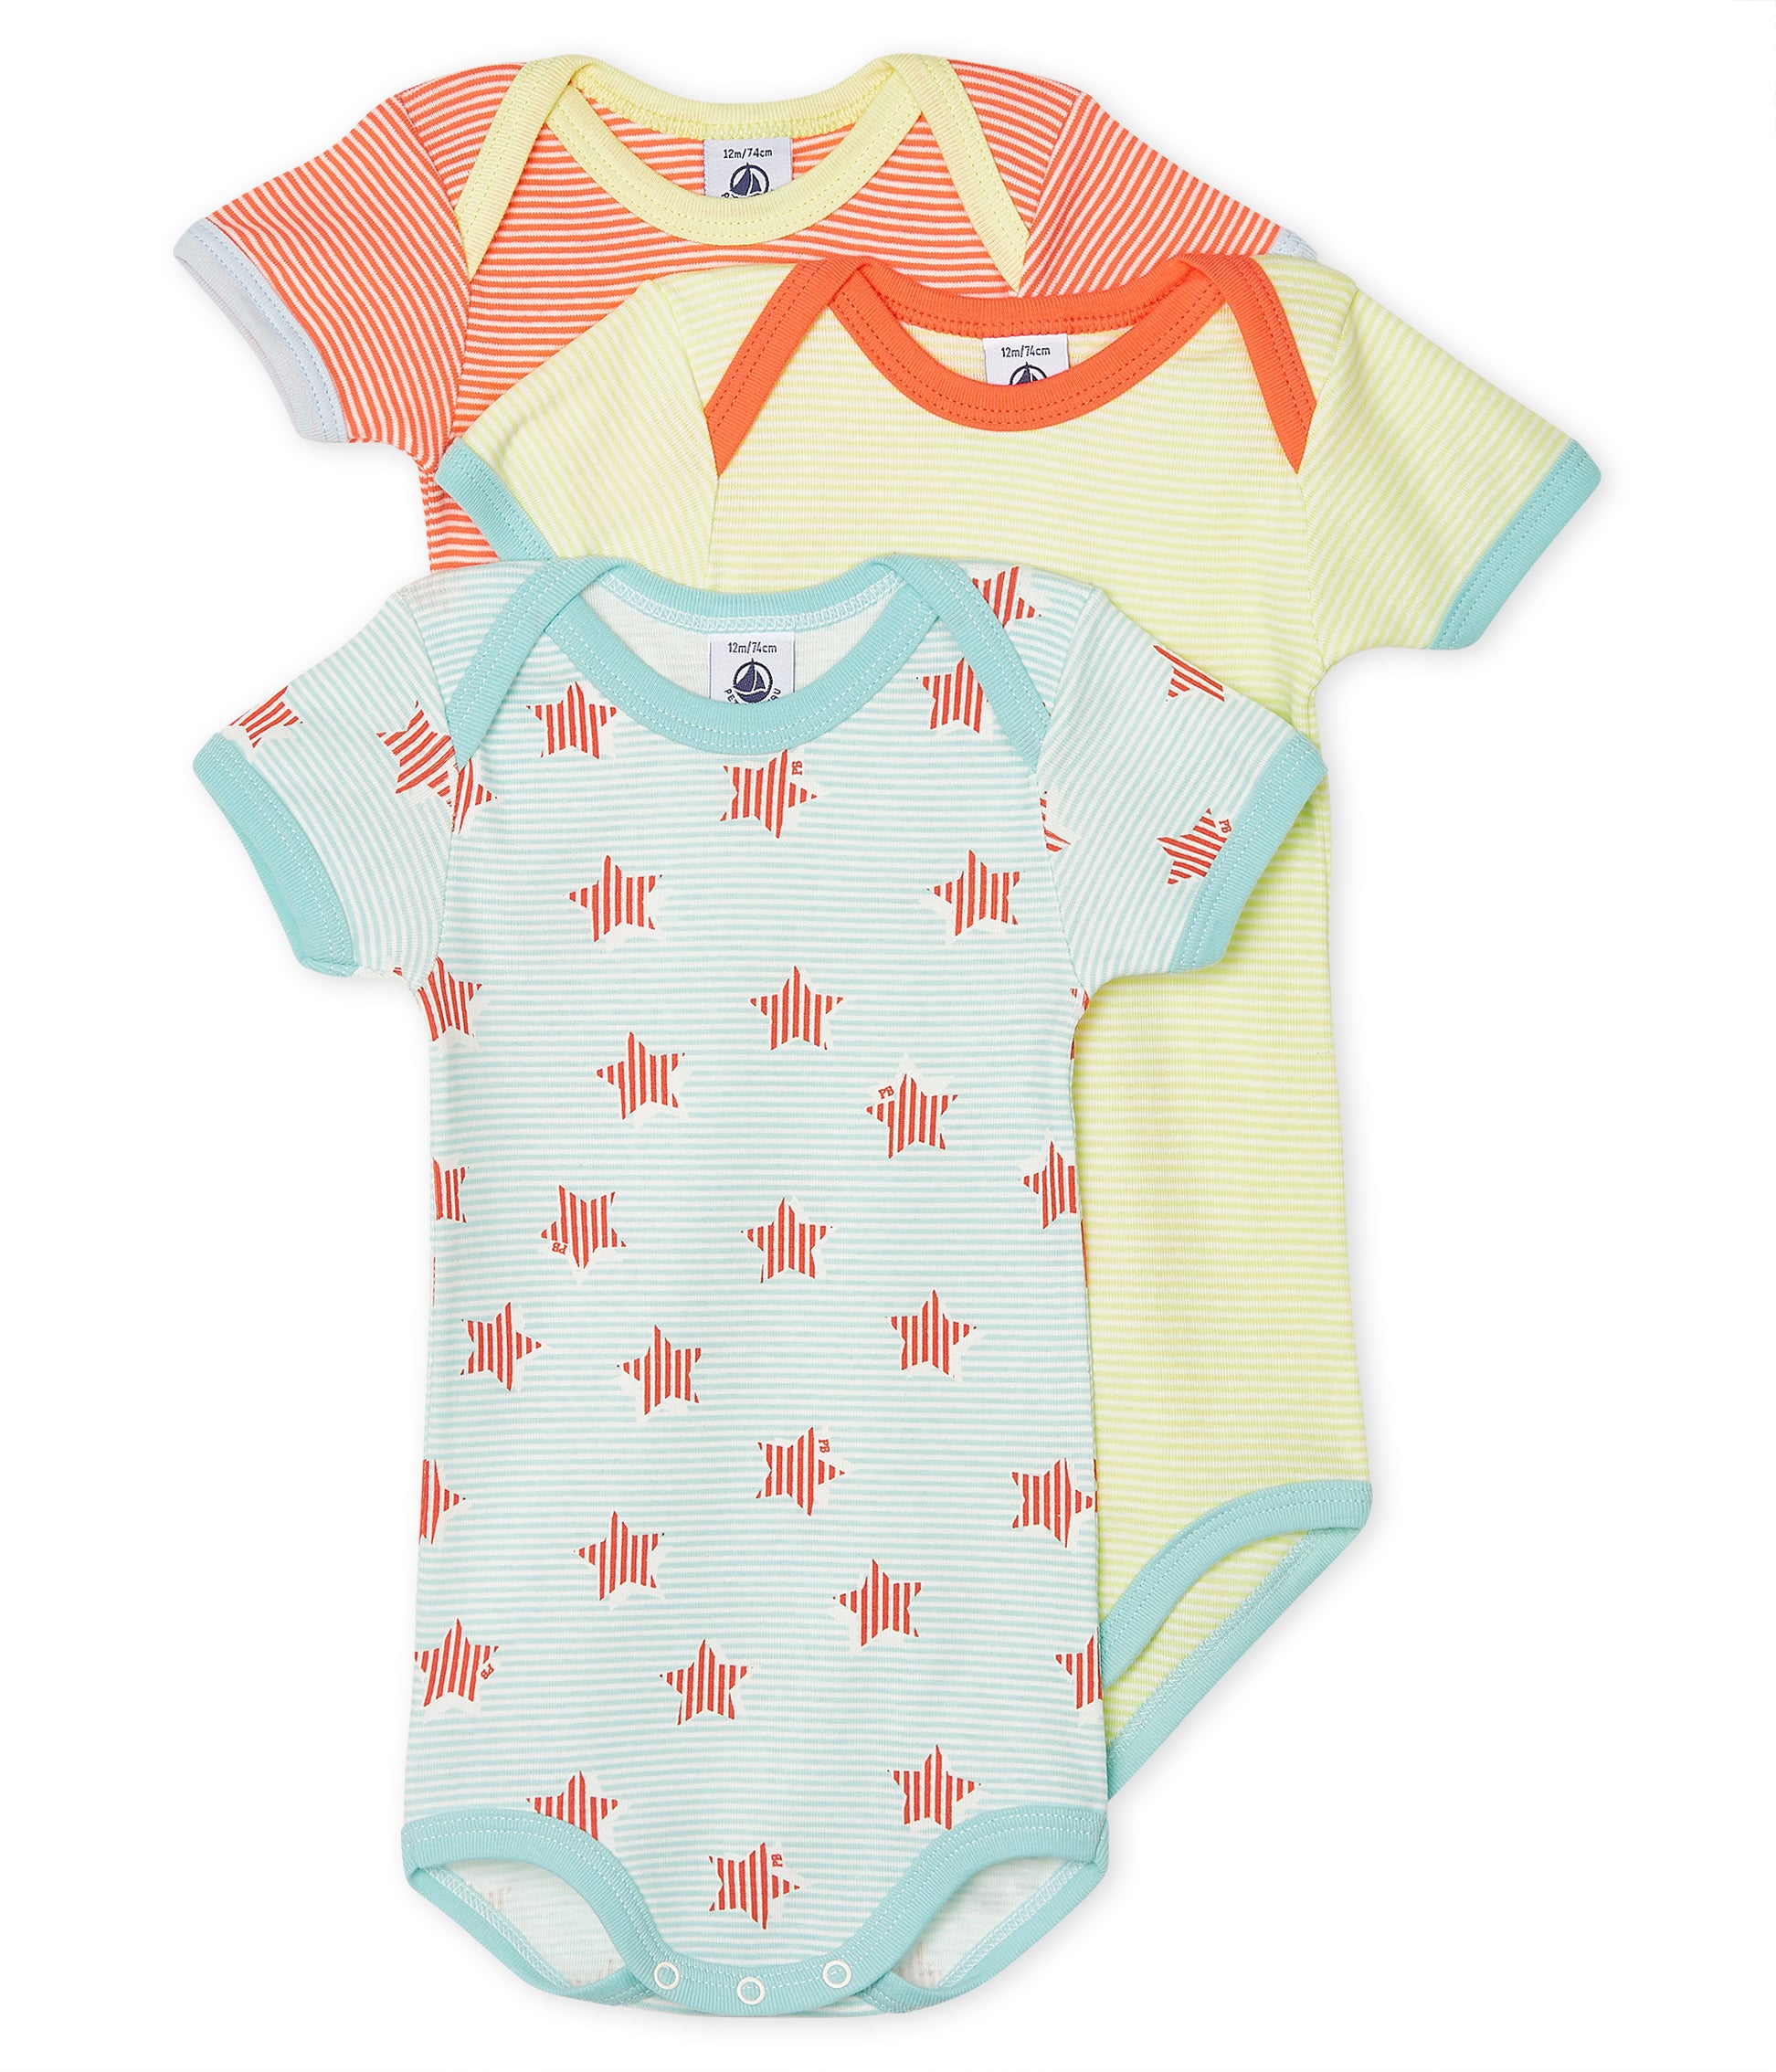 Baby Boys Multicolor Cotton Babysuit Set (3 Pack)